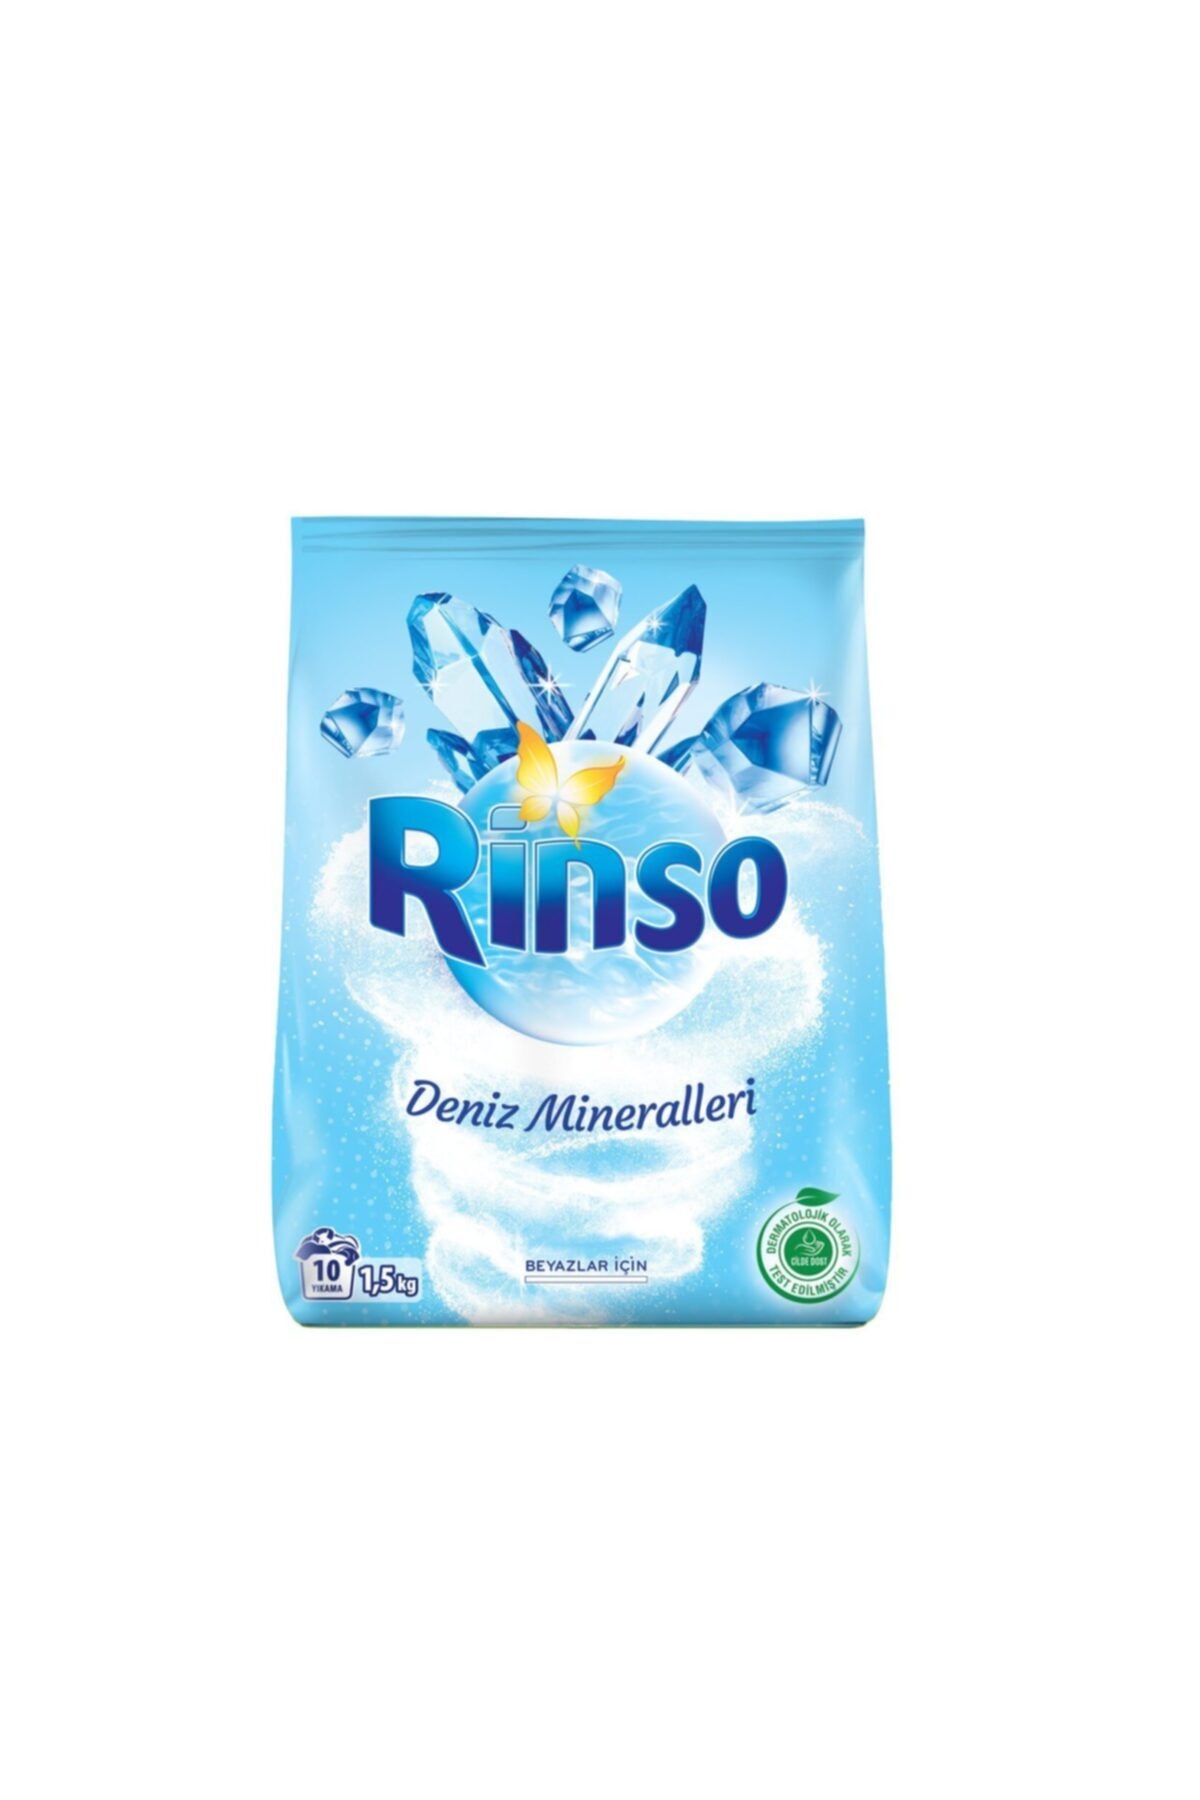 Rinso Deniz Mineralleri Beyazlar İçin Toz Çamaşır Deterjanı 1.5 kg 10 Yıkama